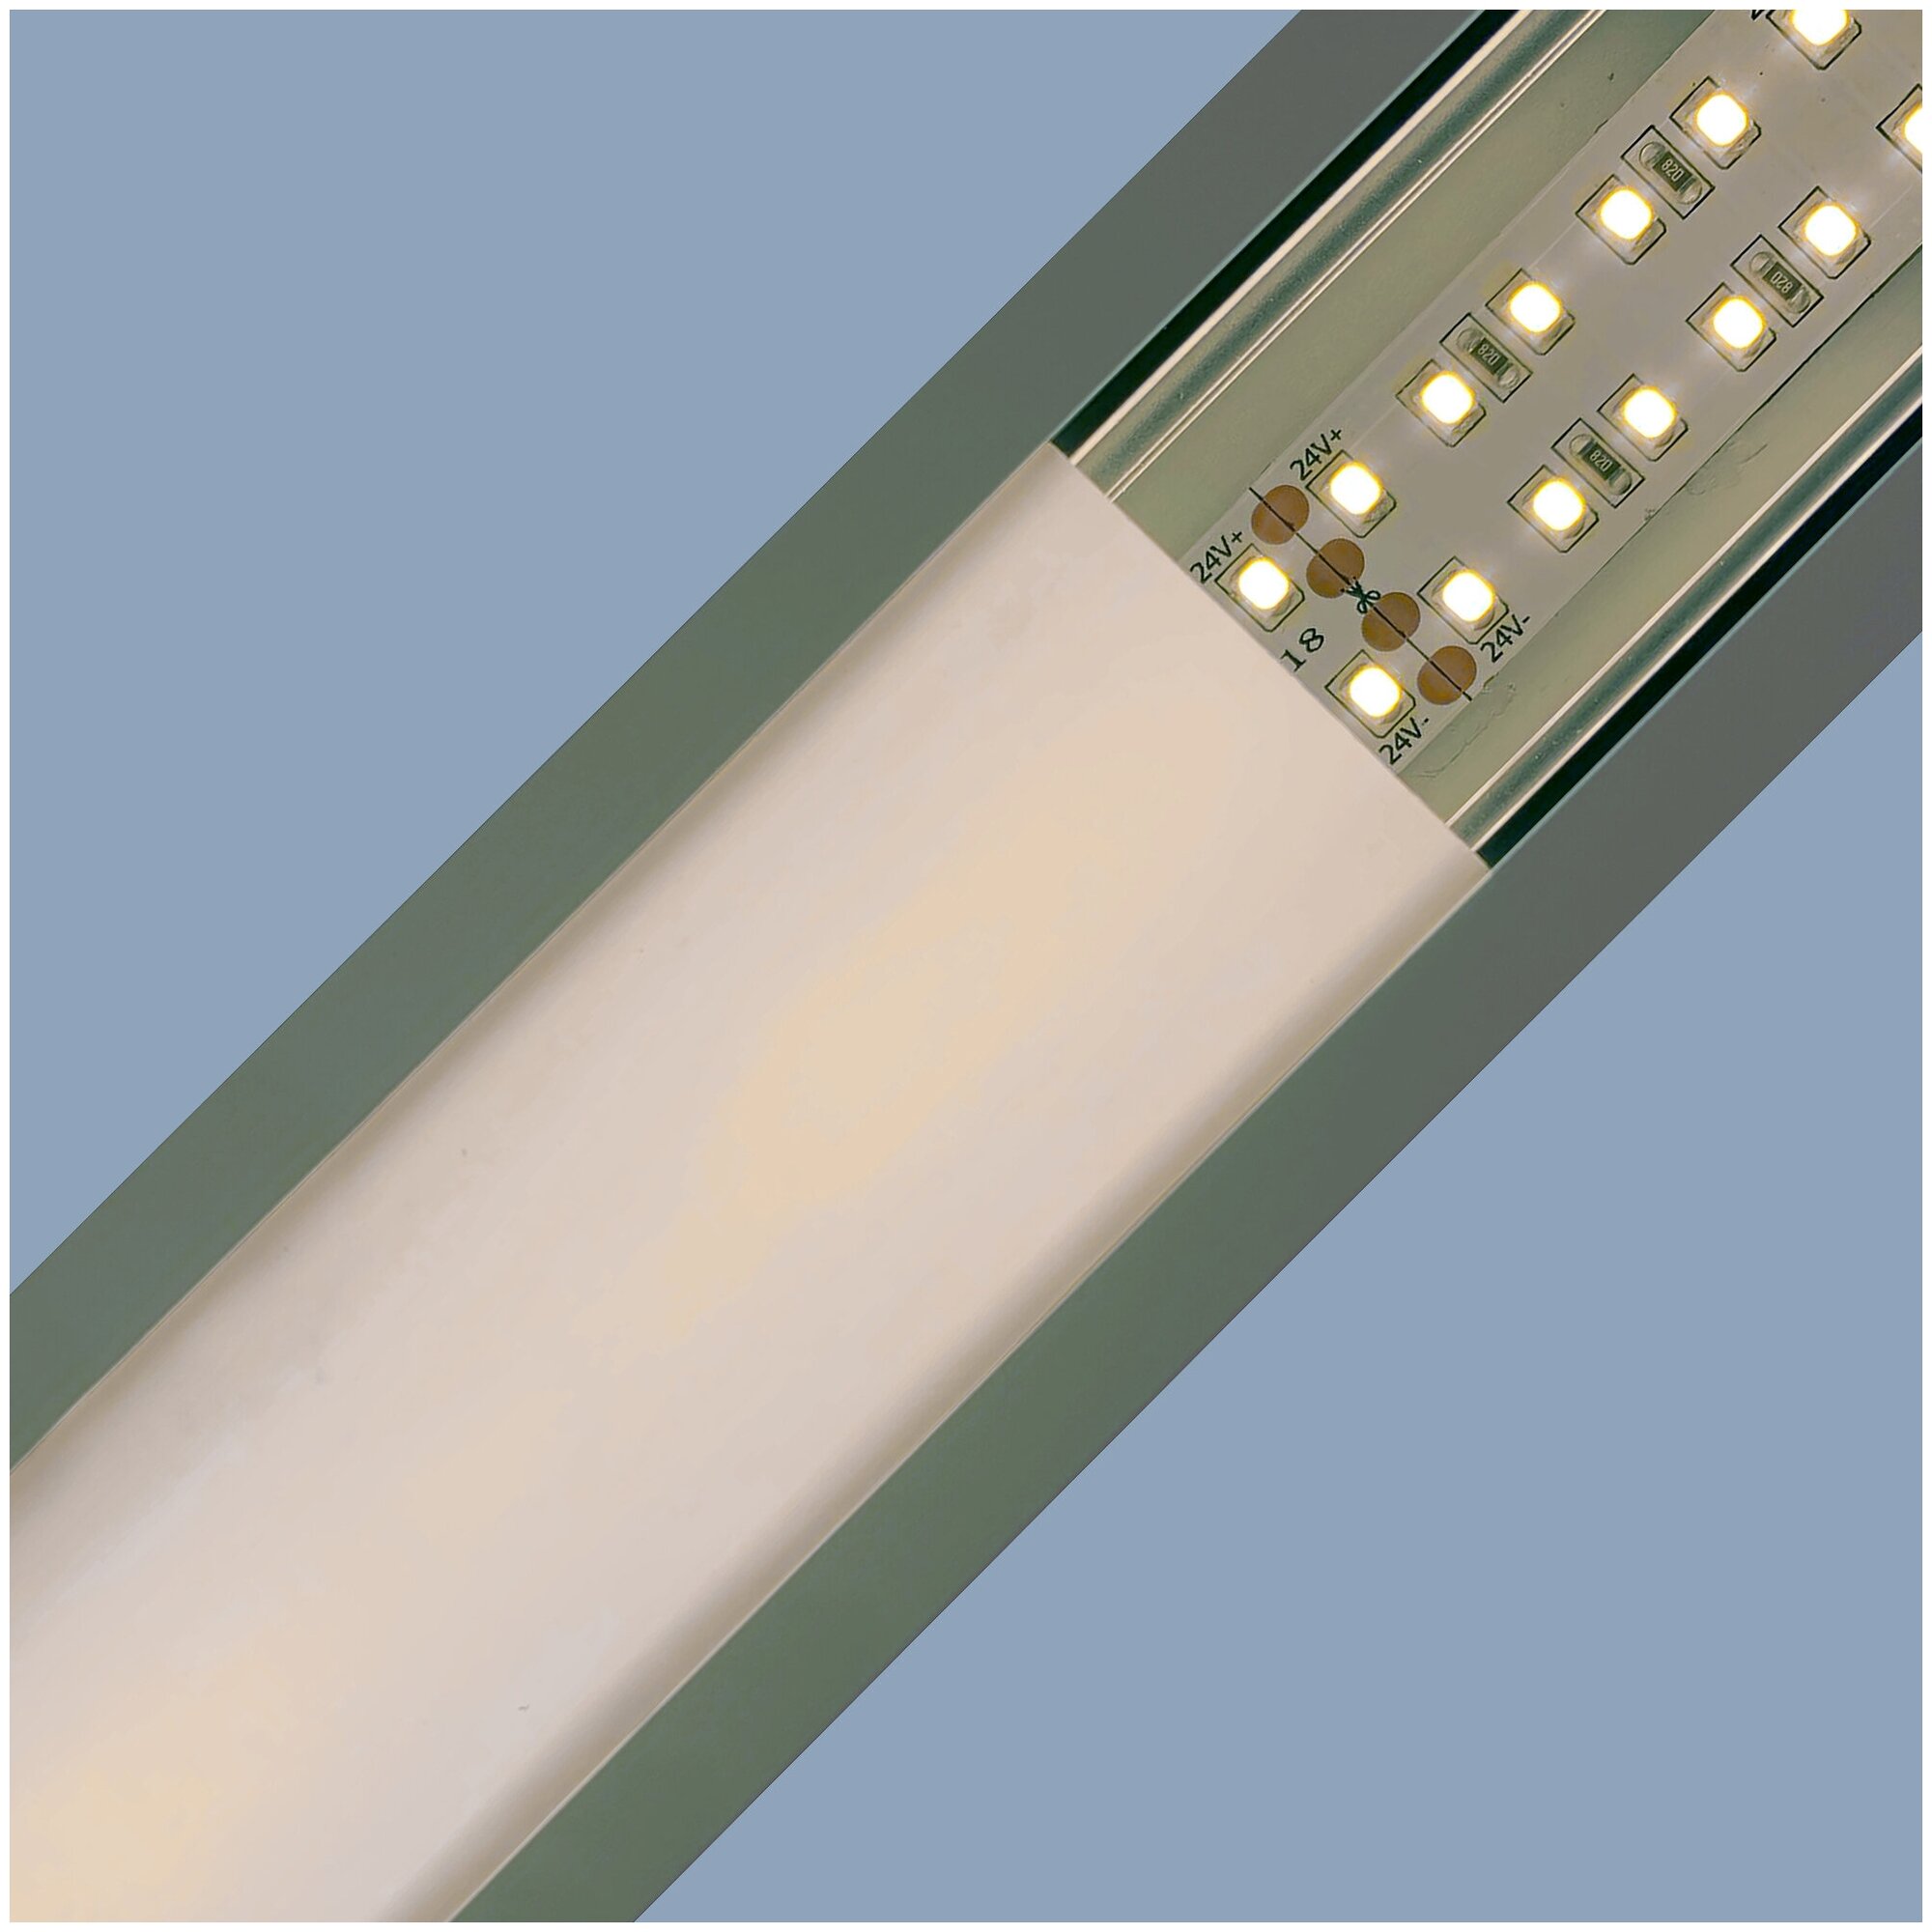 П-образный алюминиевый профиль для установки светодиодной ленты без рассеивателя и заглушек / Прямой профиль для врезного монтажа LED ленты шириной до 10 мм / серебро / 1000х22х6 мм / IP44 /08-06-01